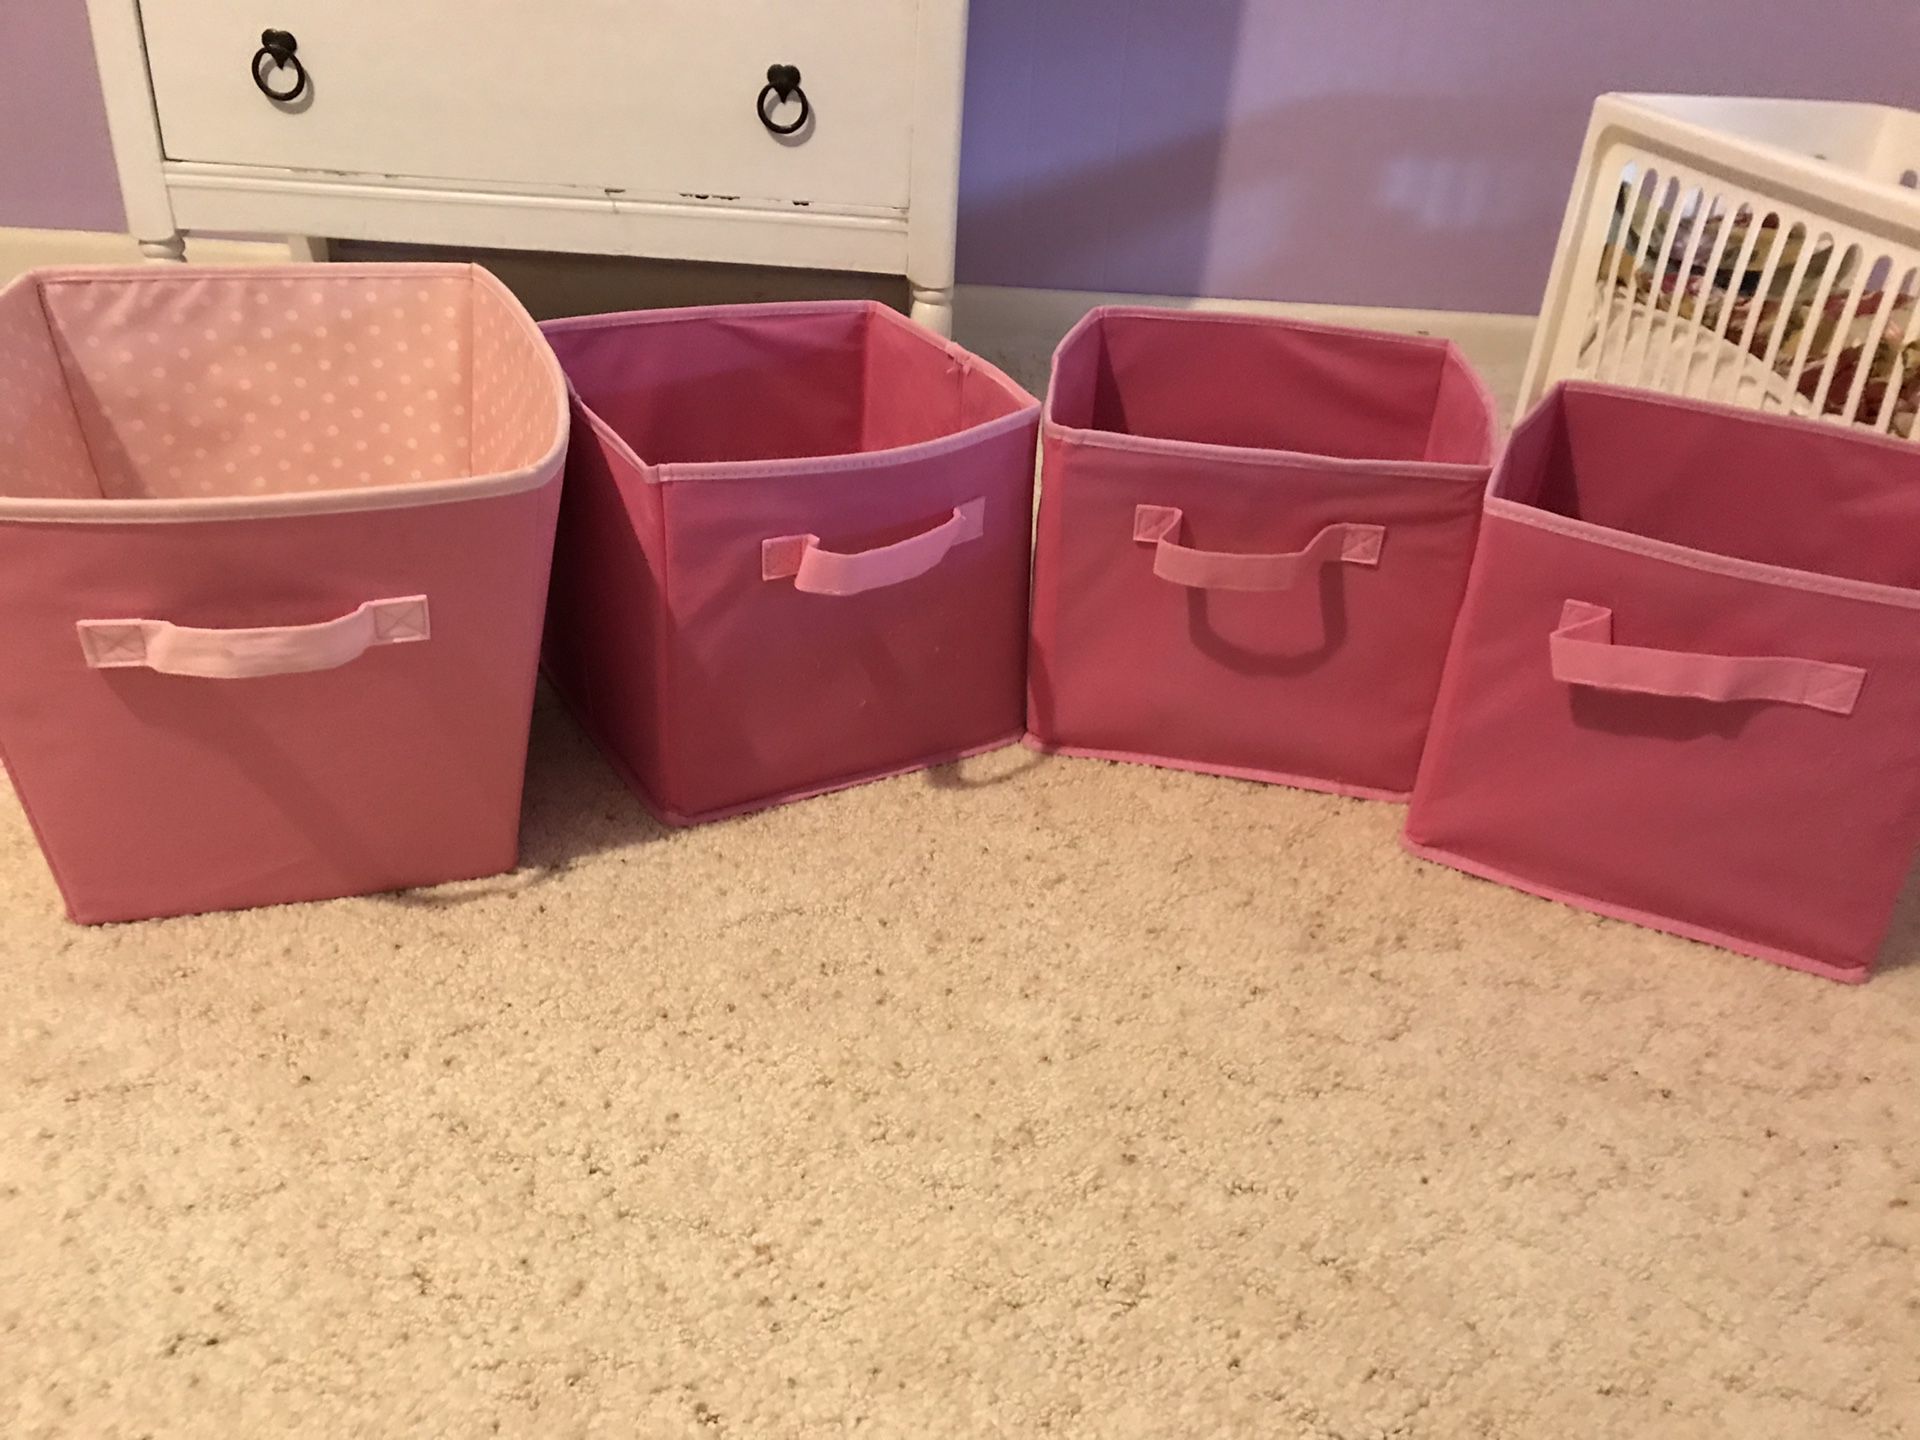 Pink storage cubes